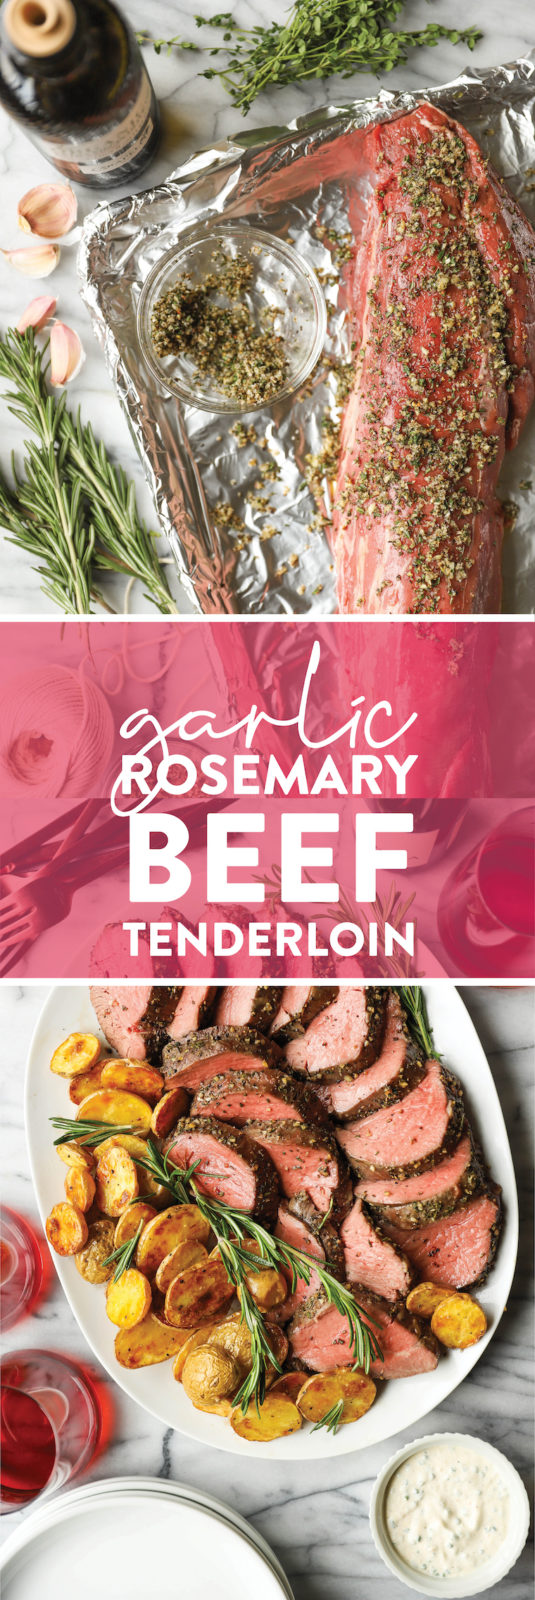 Garlic Rosemary Beef Tenderloin